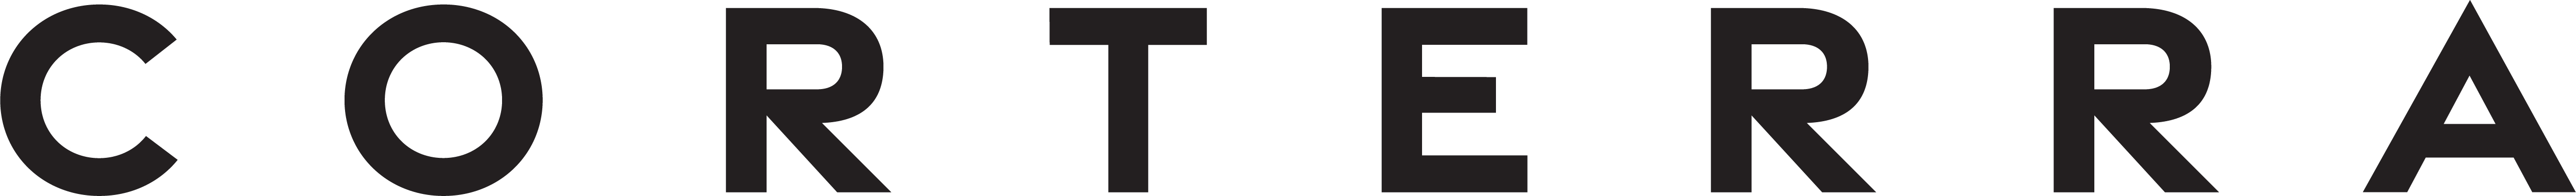 Corterra Logo